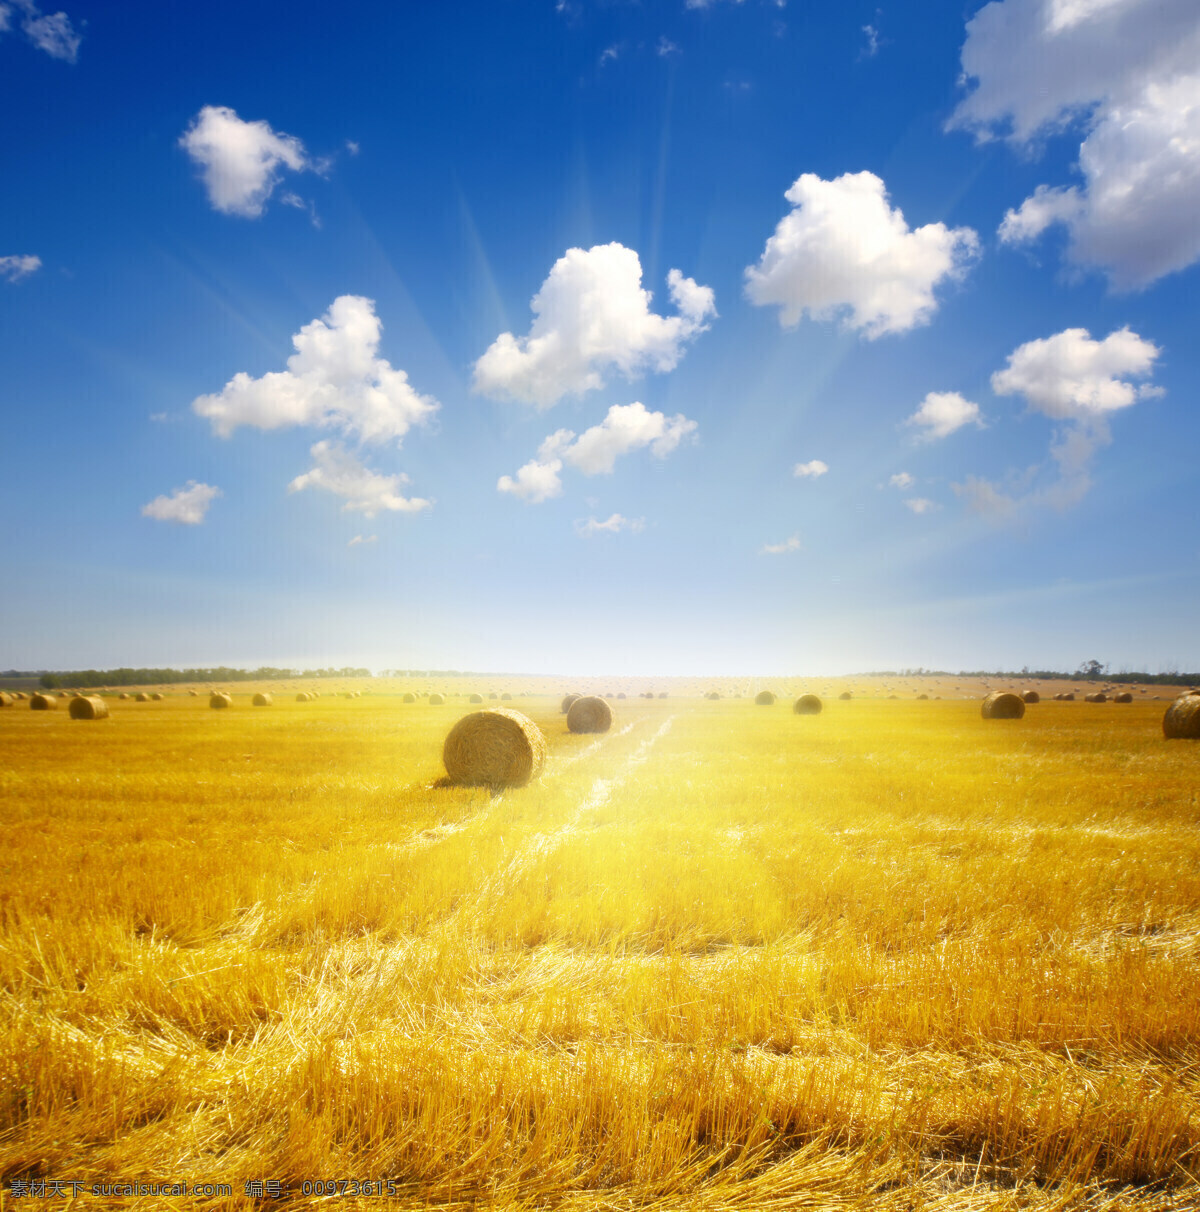 麦田 小麦 阳光 蓝天 金黄色 麦穗 田园风光 自然景观